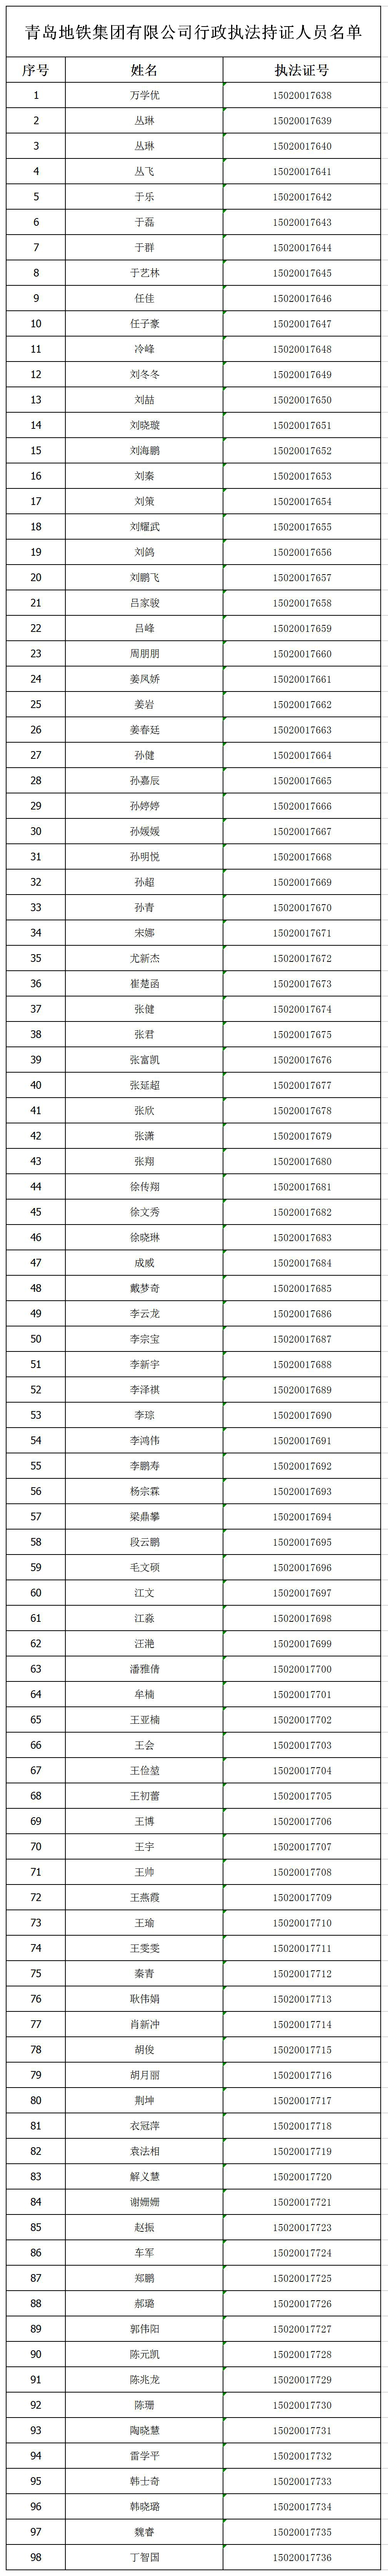 青岛地铁集团有限公司行政执法持证人员名单.jpg